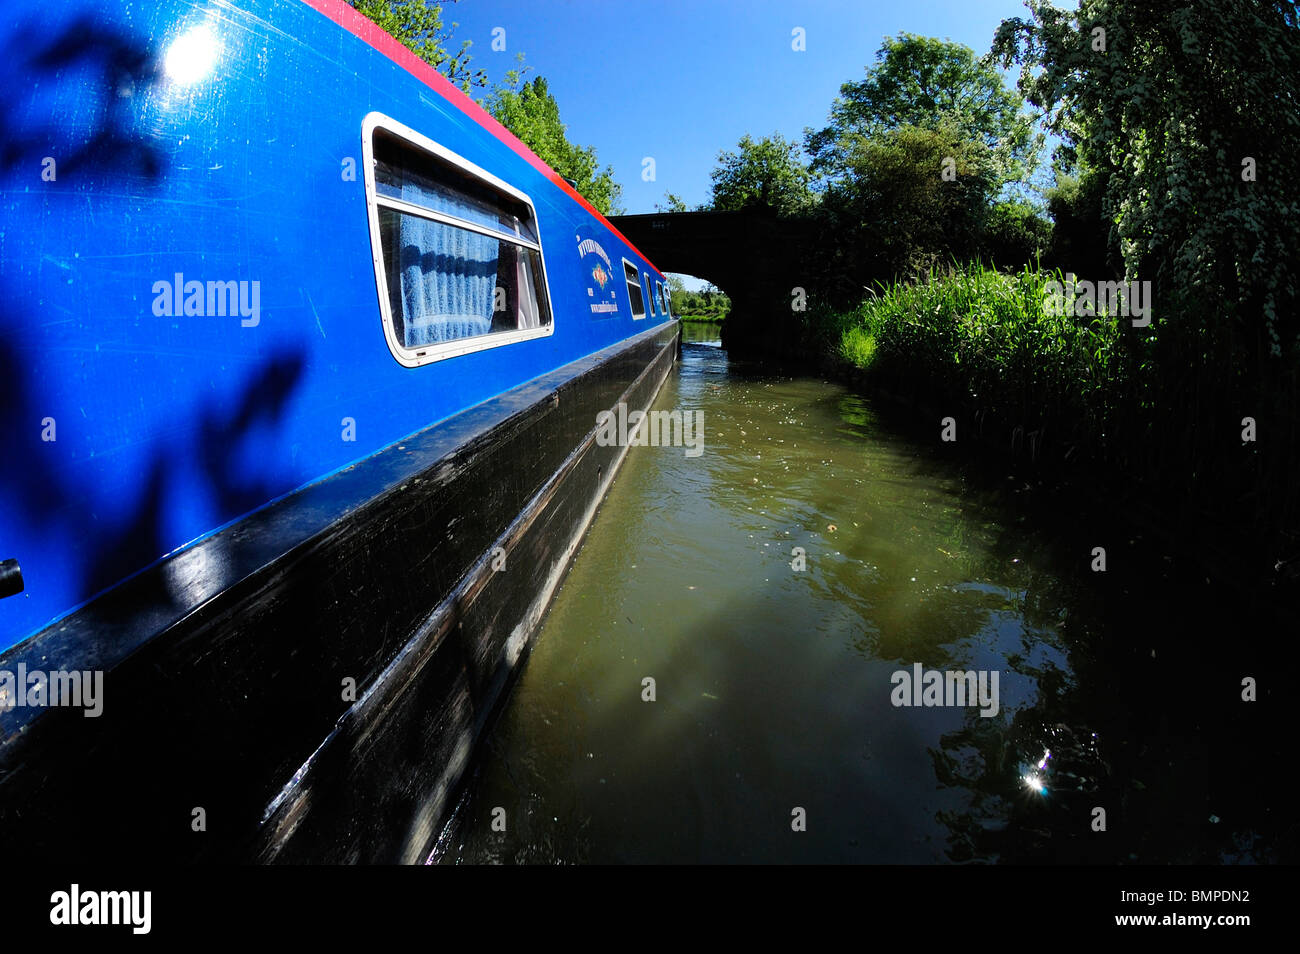 Lato della barca stretta, Grand Union Canal, REGNO UNITO Foto Stock